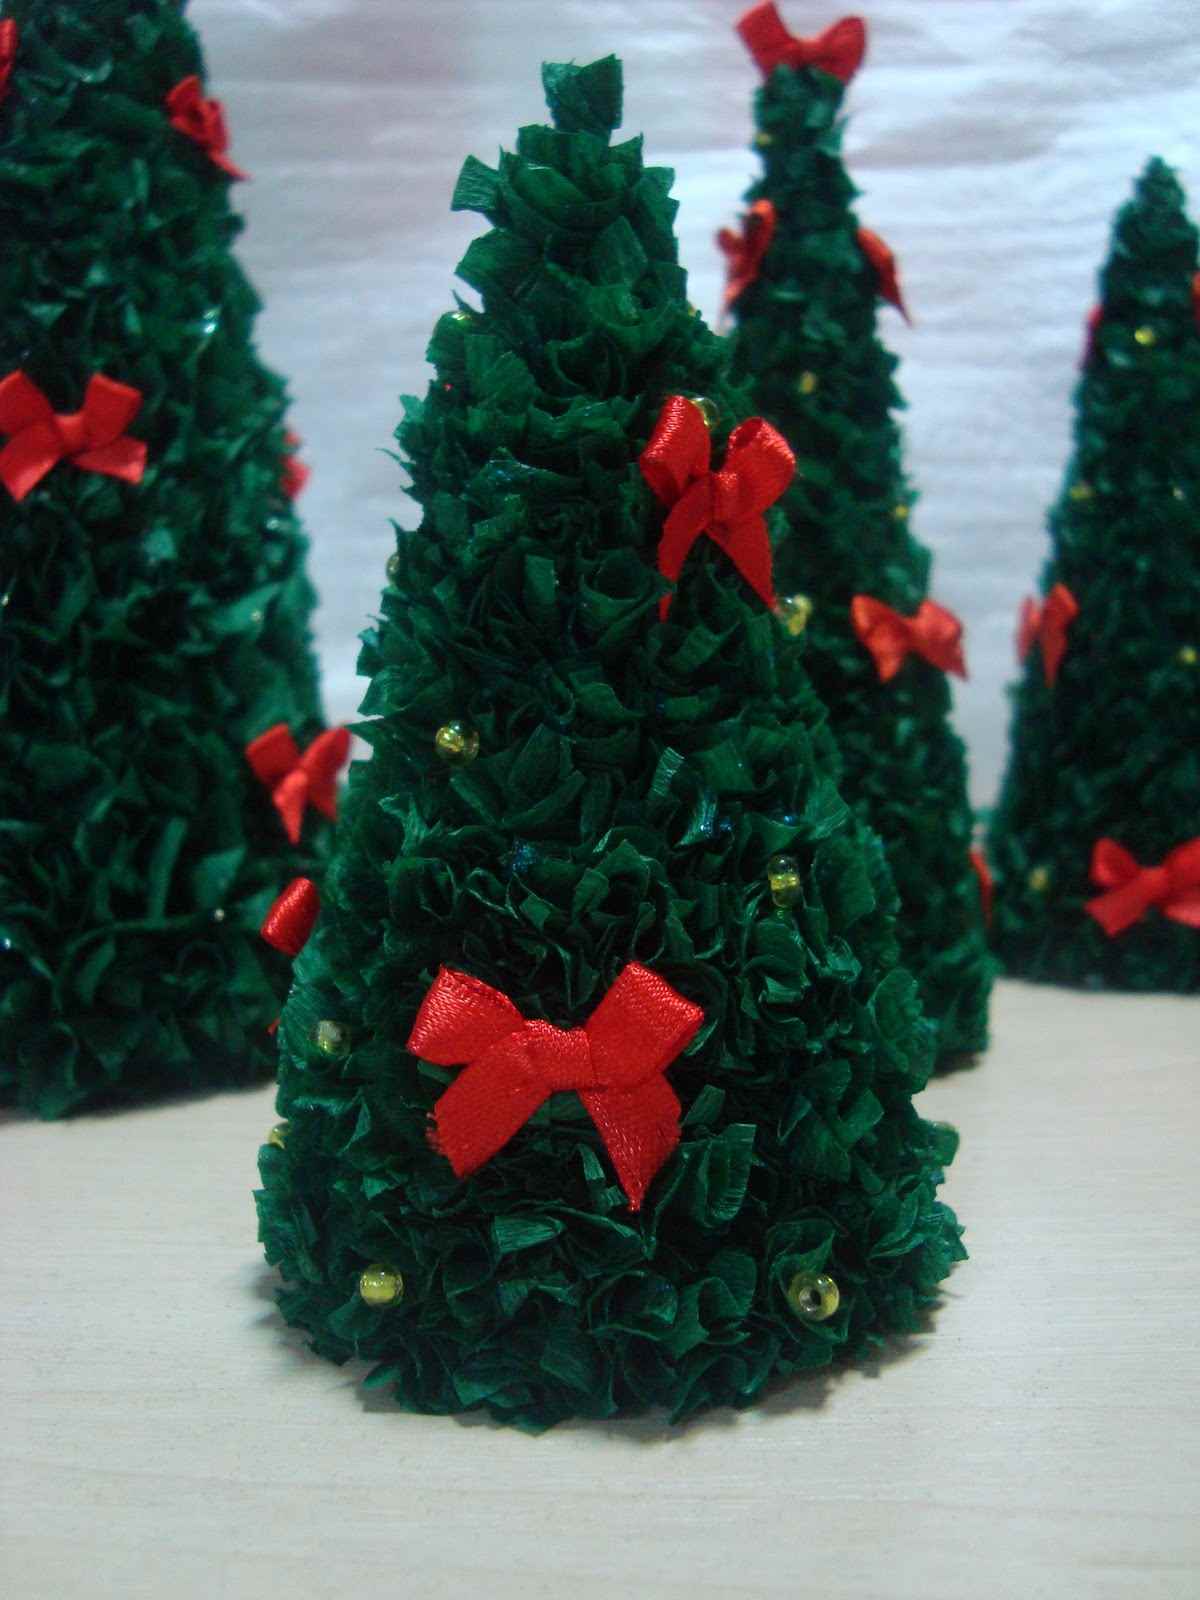 L'idea di creare da soli un bellissimo albero di Natale in cartone